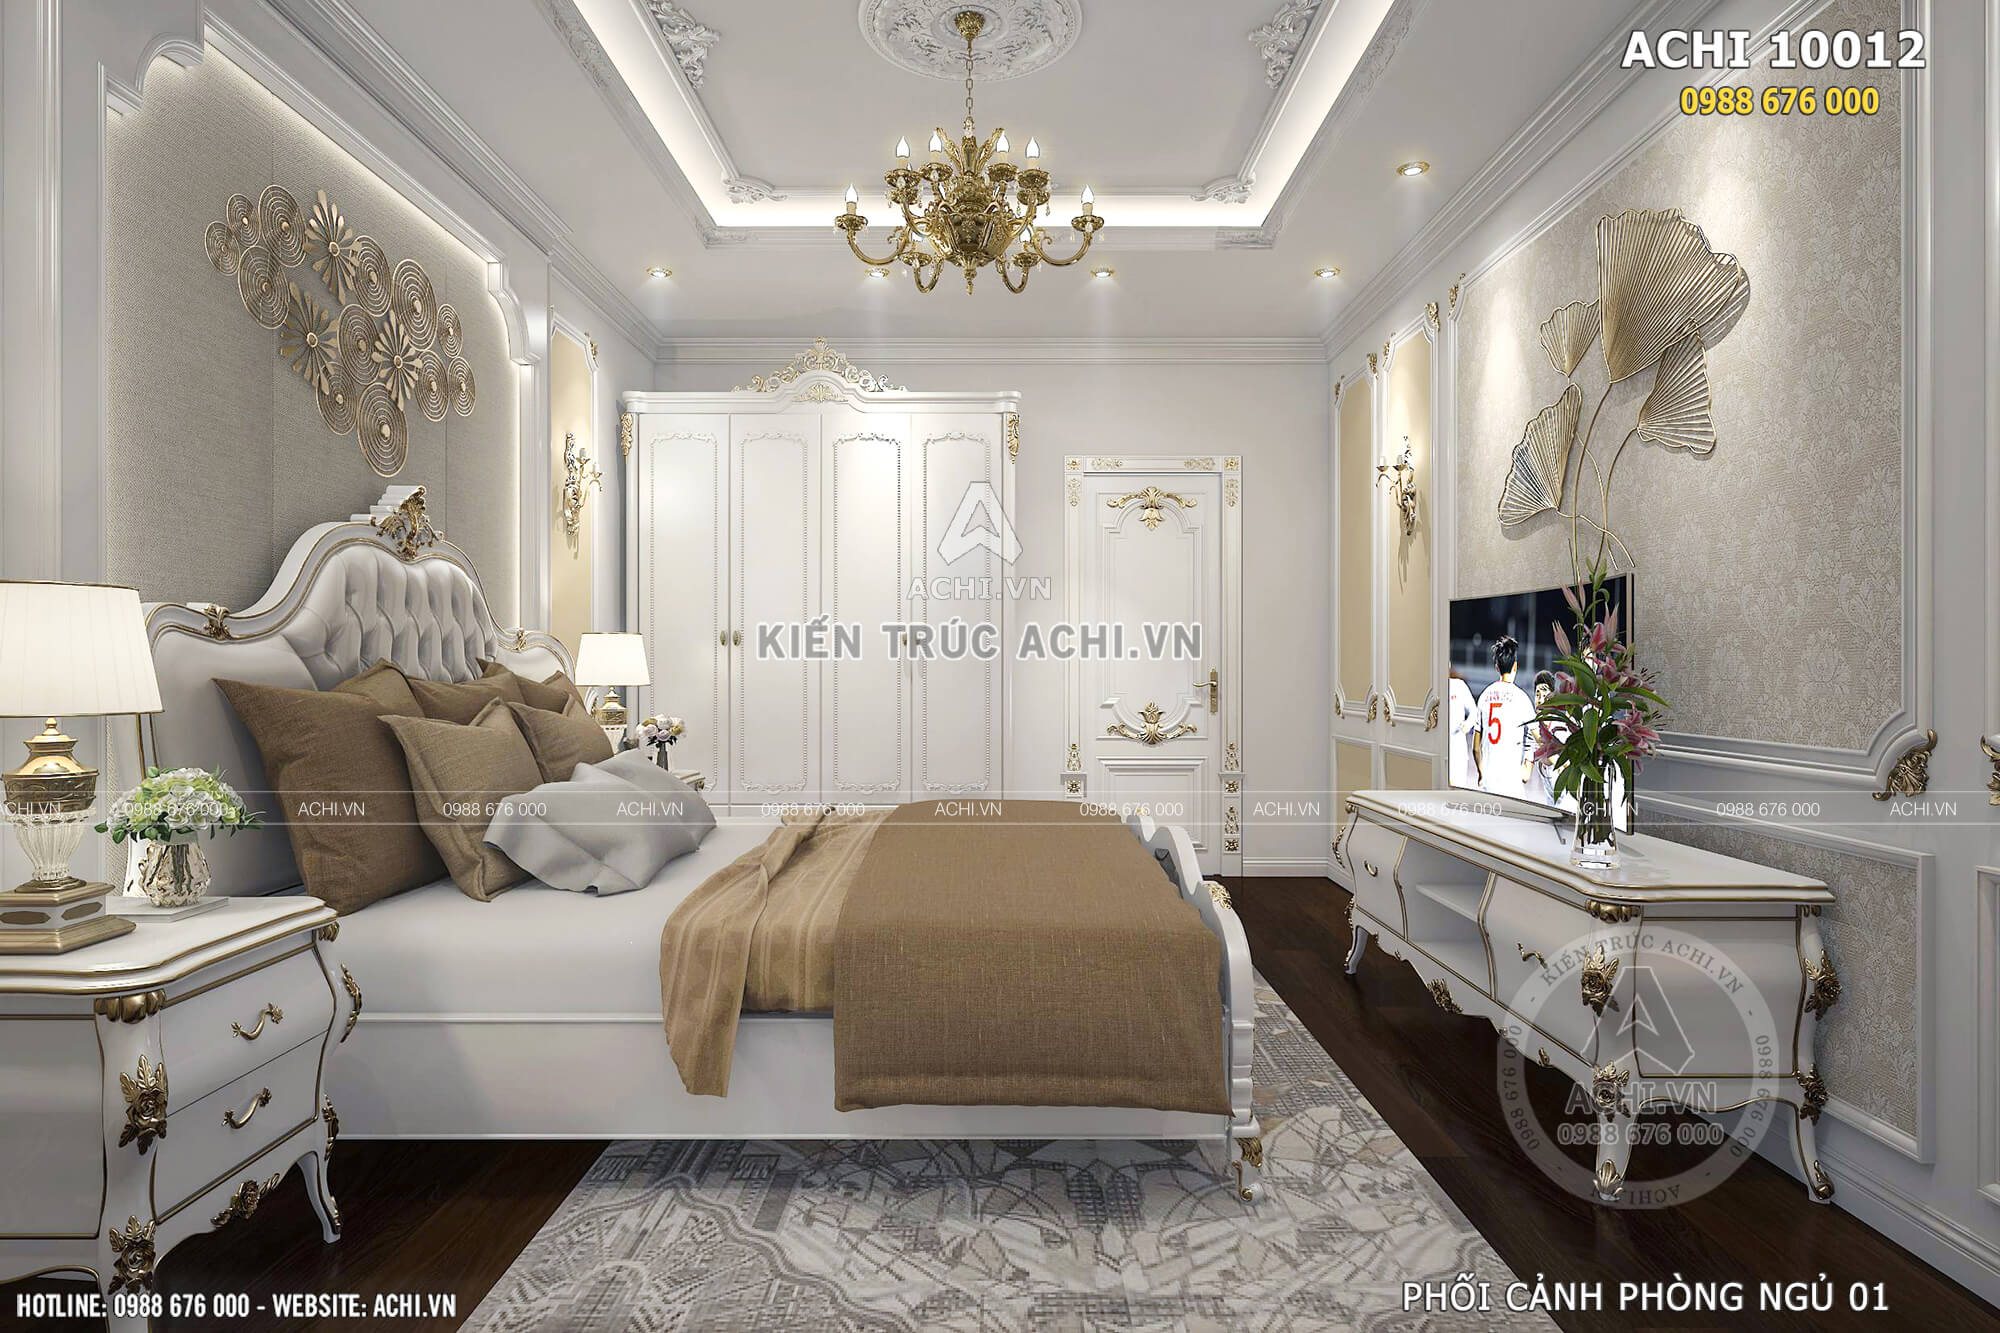 Thiết kế nội thất phòng ngủ đẹp mang phong cách tân cổ điển sang trọng và cuốn hút